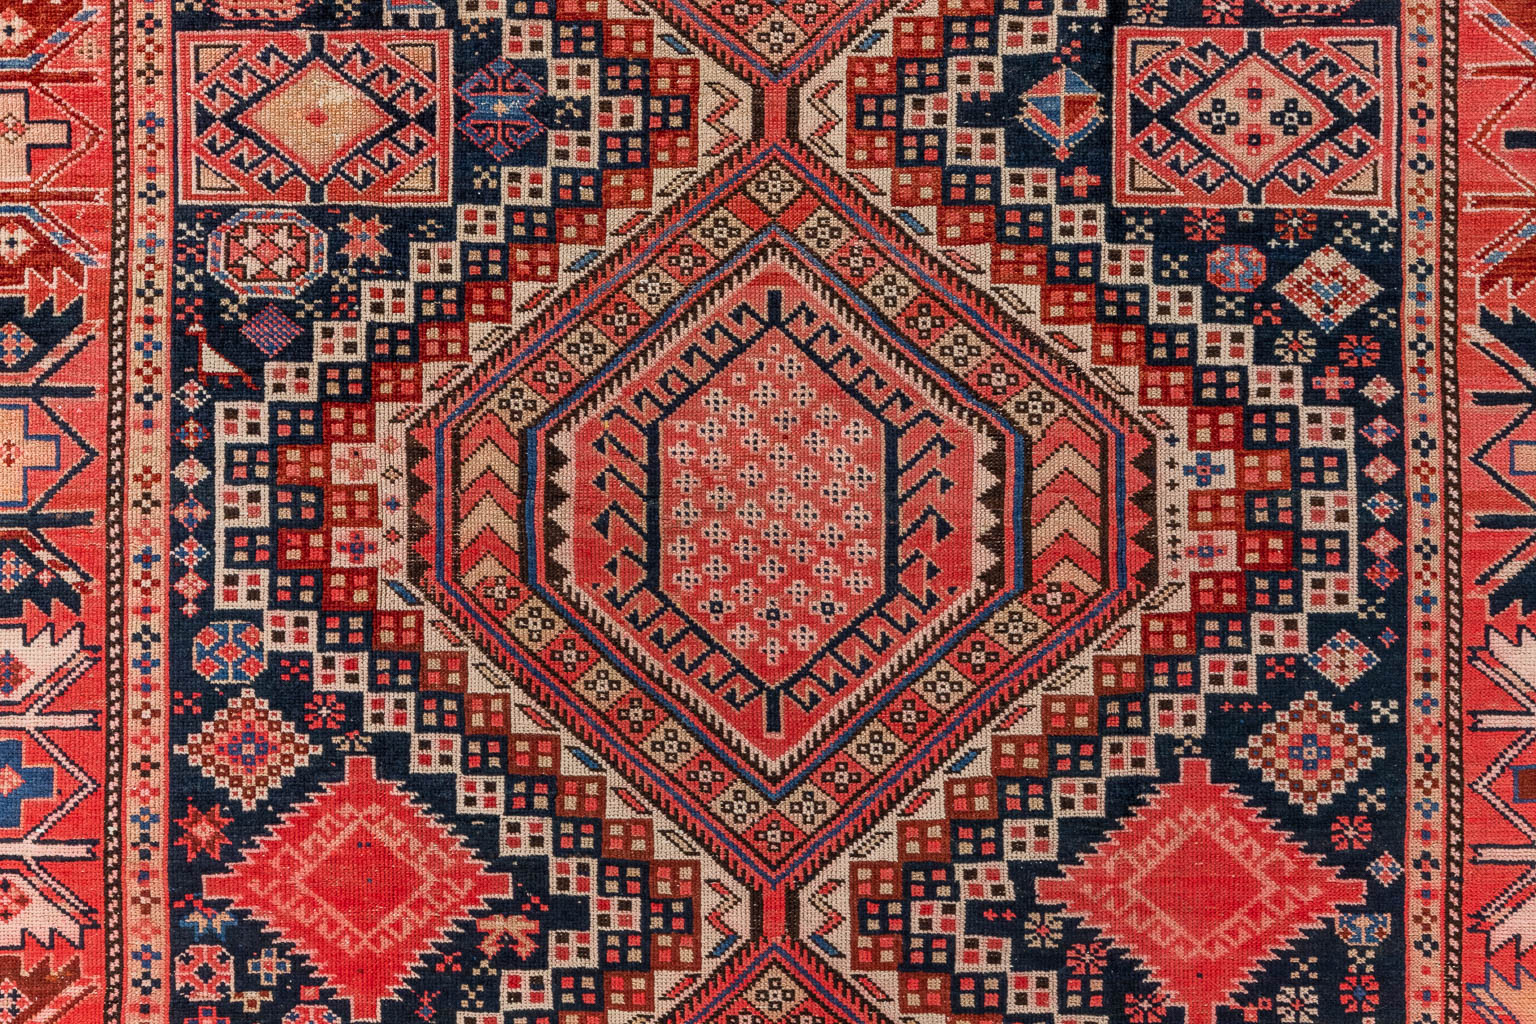 An Oriental hand-made carpet, Shirvan, Kaukasus. (D:305 x W:149 cm)